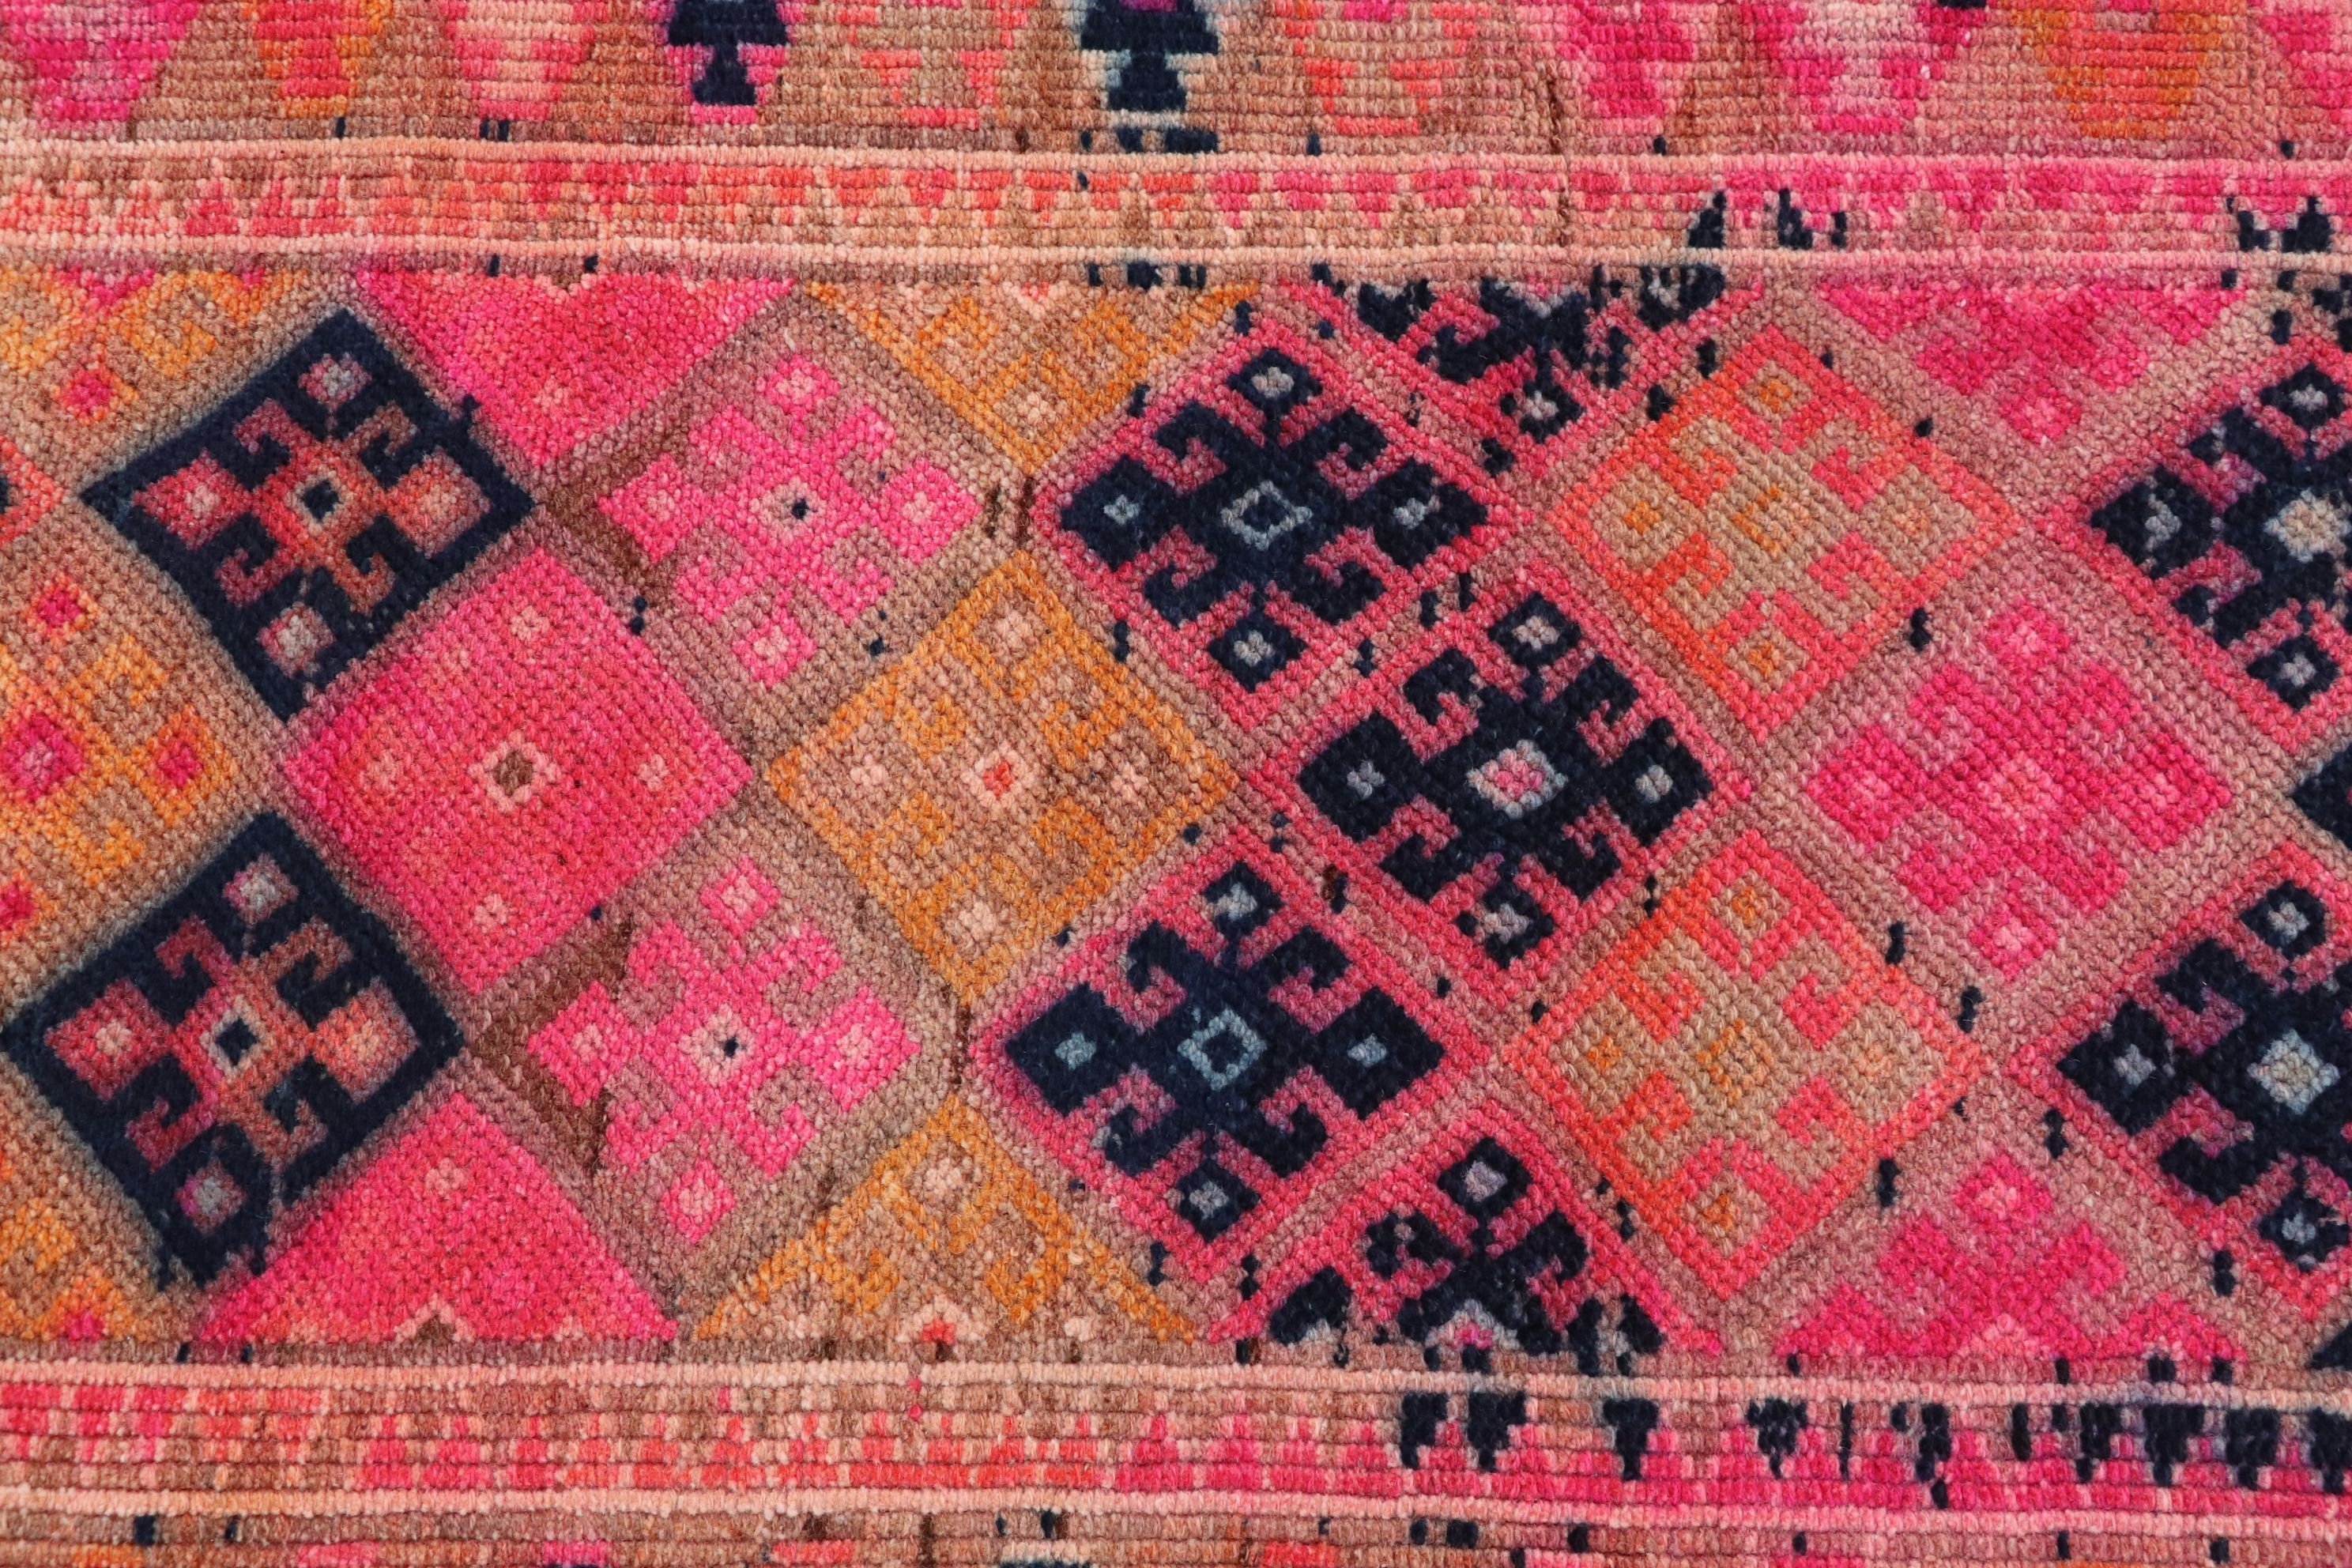 Pink Oriental Rug, Vintage Rugs, 2.6x8.2 ft Runner Rug, Stair Rug, Turkish Rug, Rugs for Stair, Cool Rug, Oriental Rugs, Hallway Rug